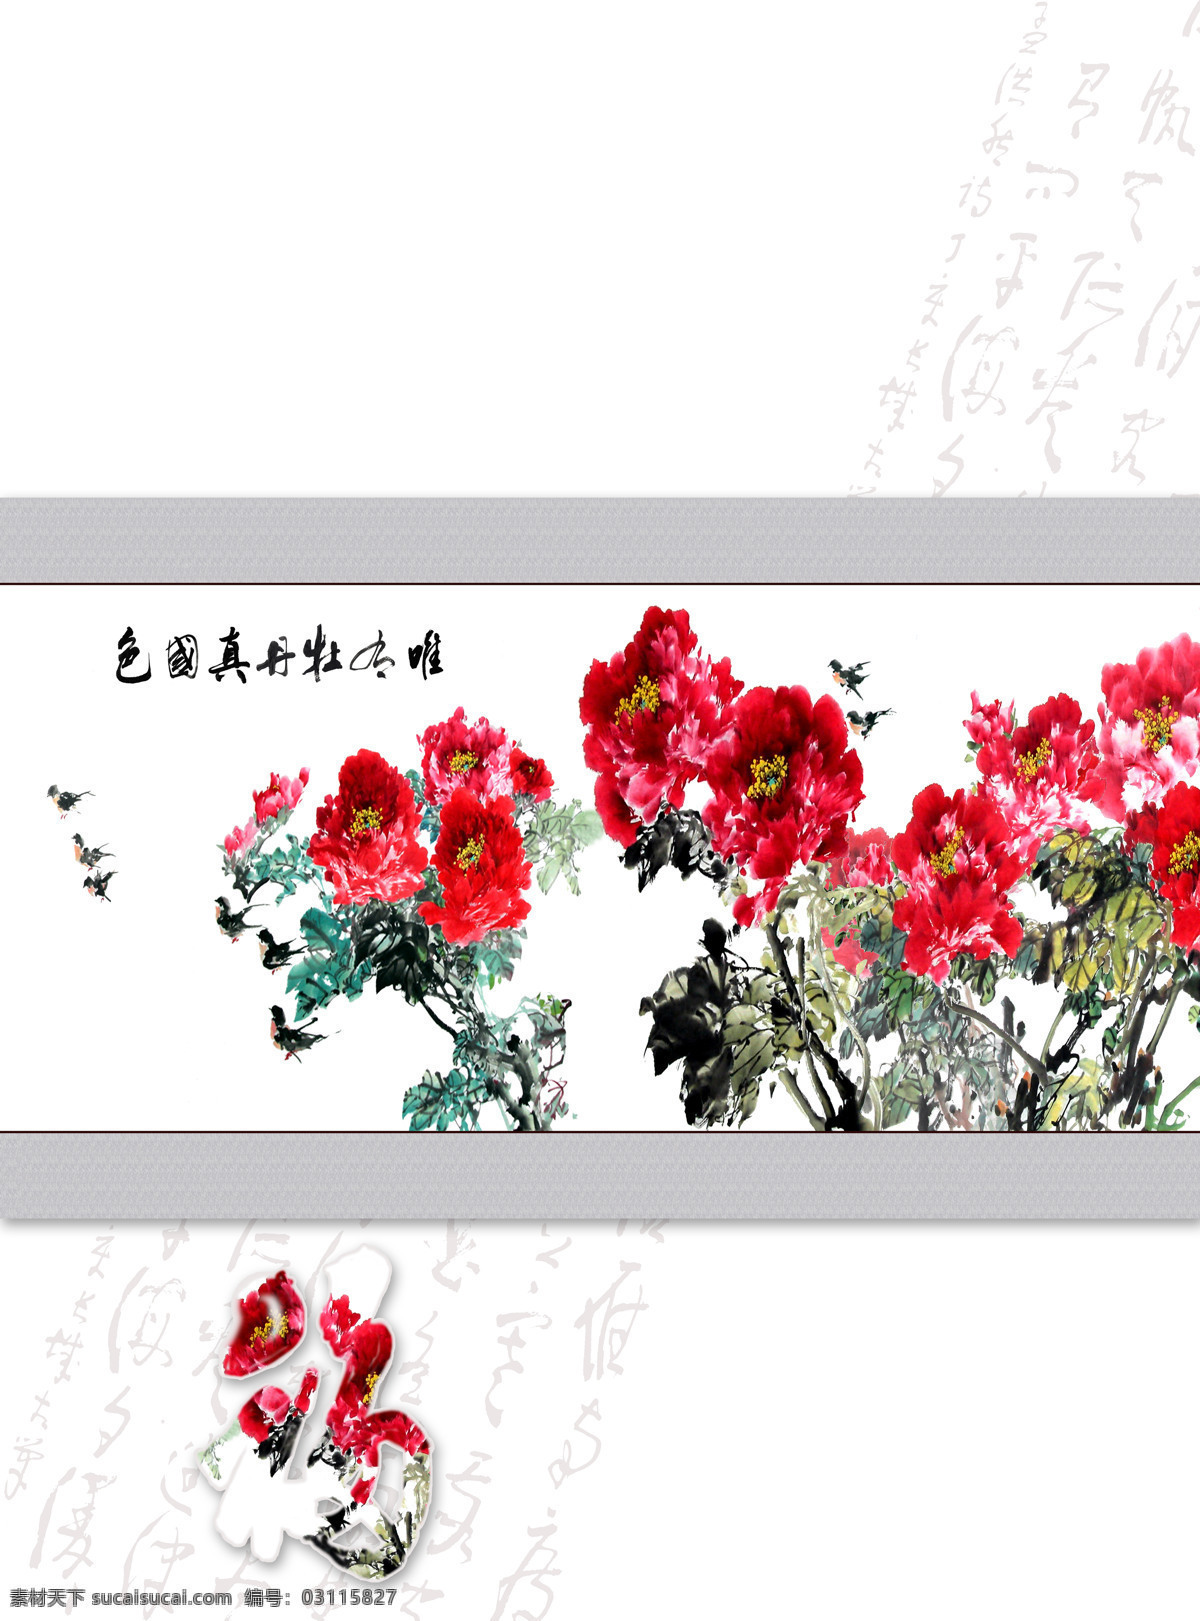 国色天香 花开富贵 牡丹纳福 文化艺术